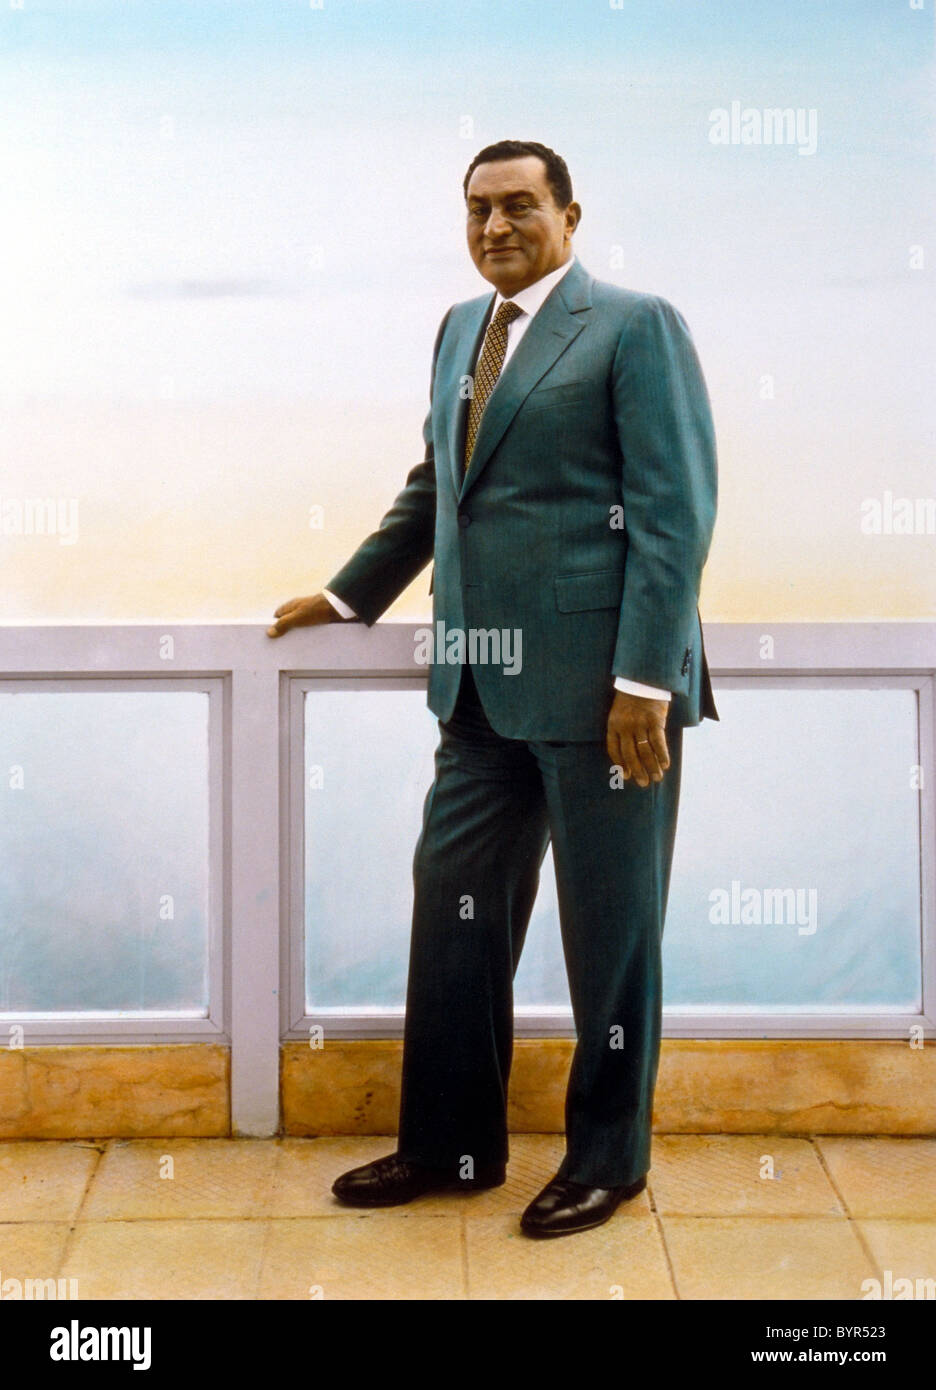 Le président égyptien Hosni Moubarak Ismailia, Égypte 1996 épreuve à la gélatine argentique, photographie coloriée par Barry Iverson Banque D'Images